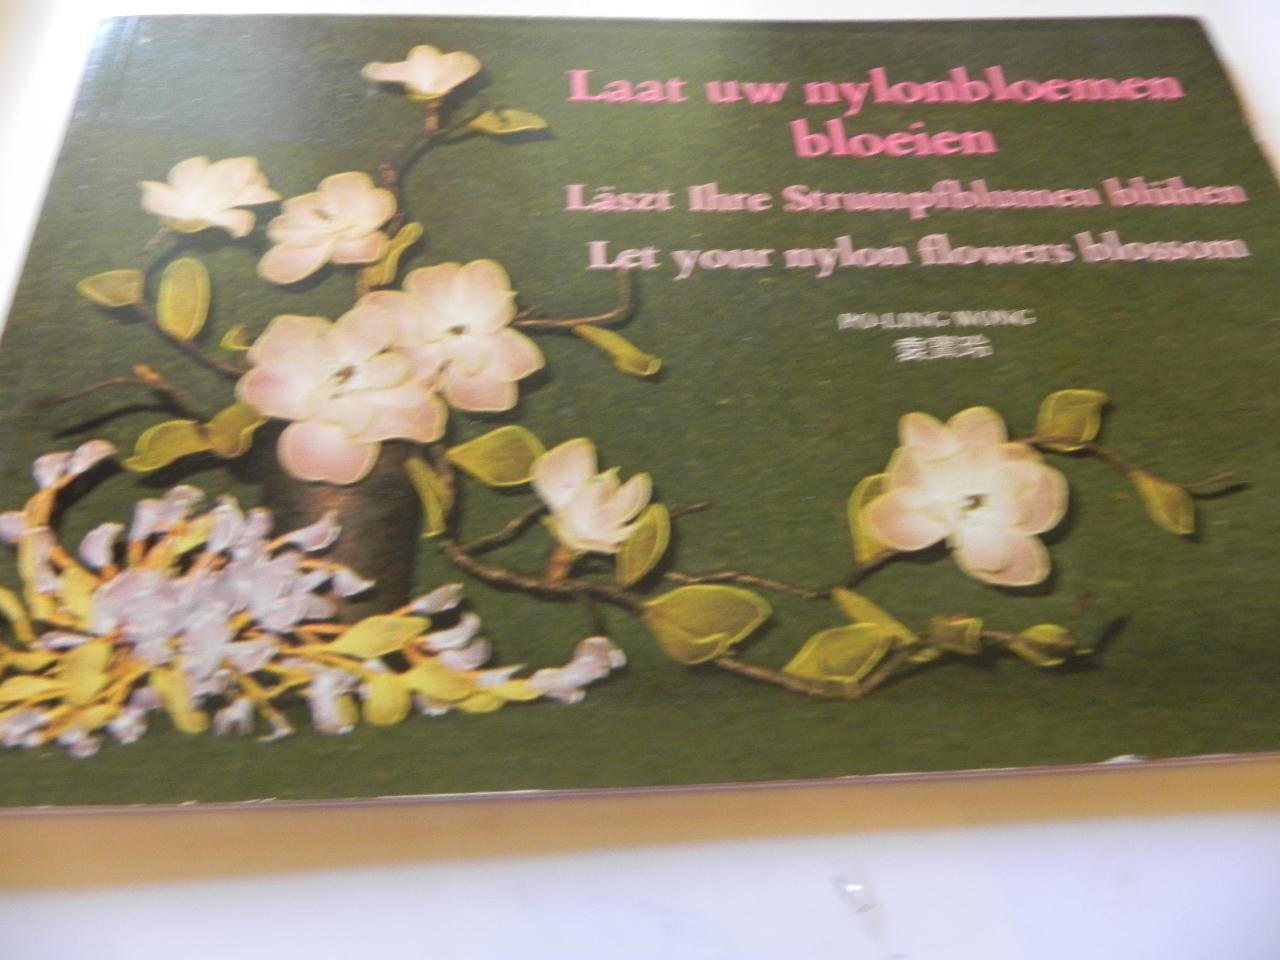 Po-Ling wong - Laat Uw nylonbloemen  bloeien